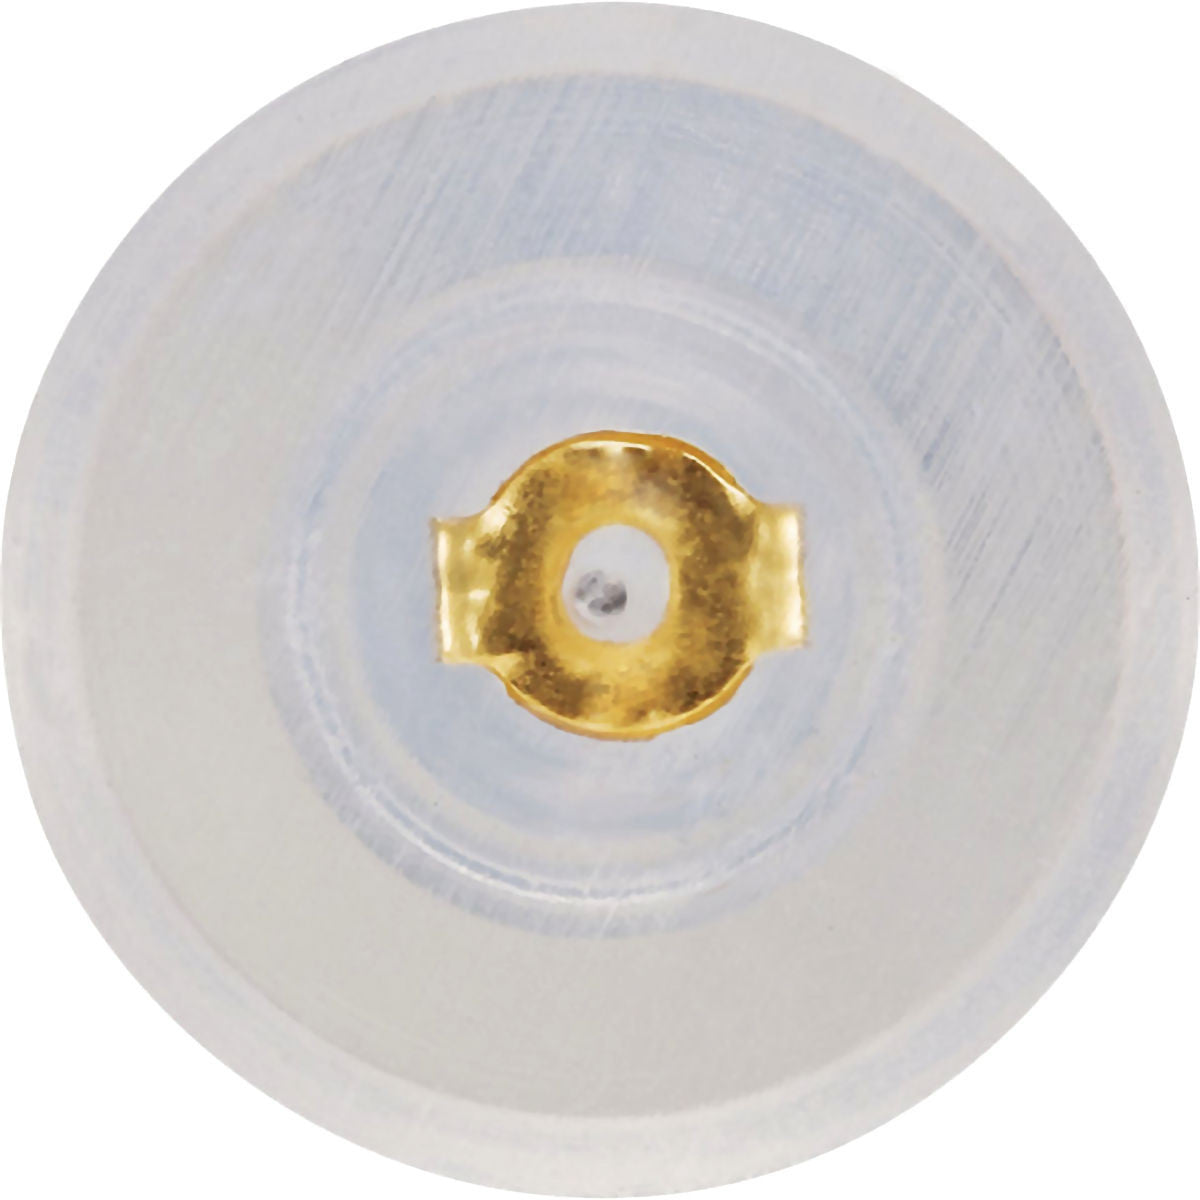 Disk Earring Backings - Gold